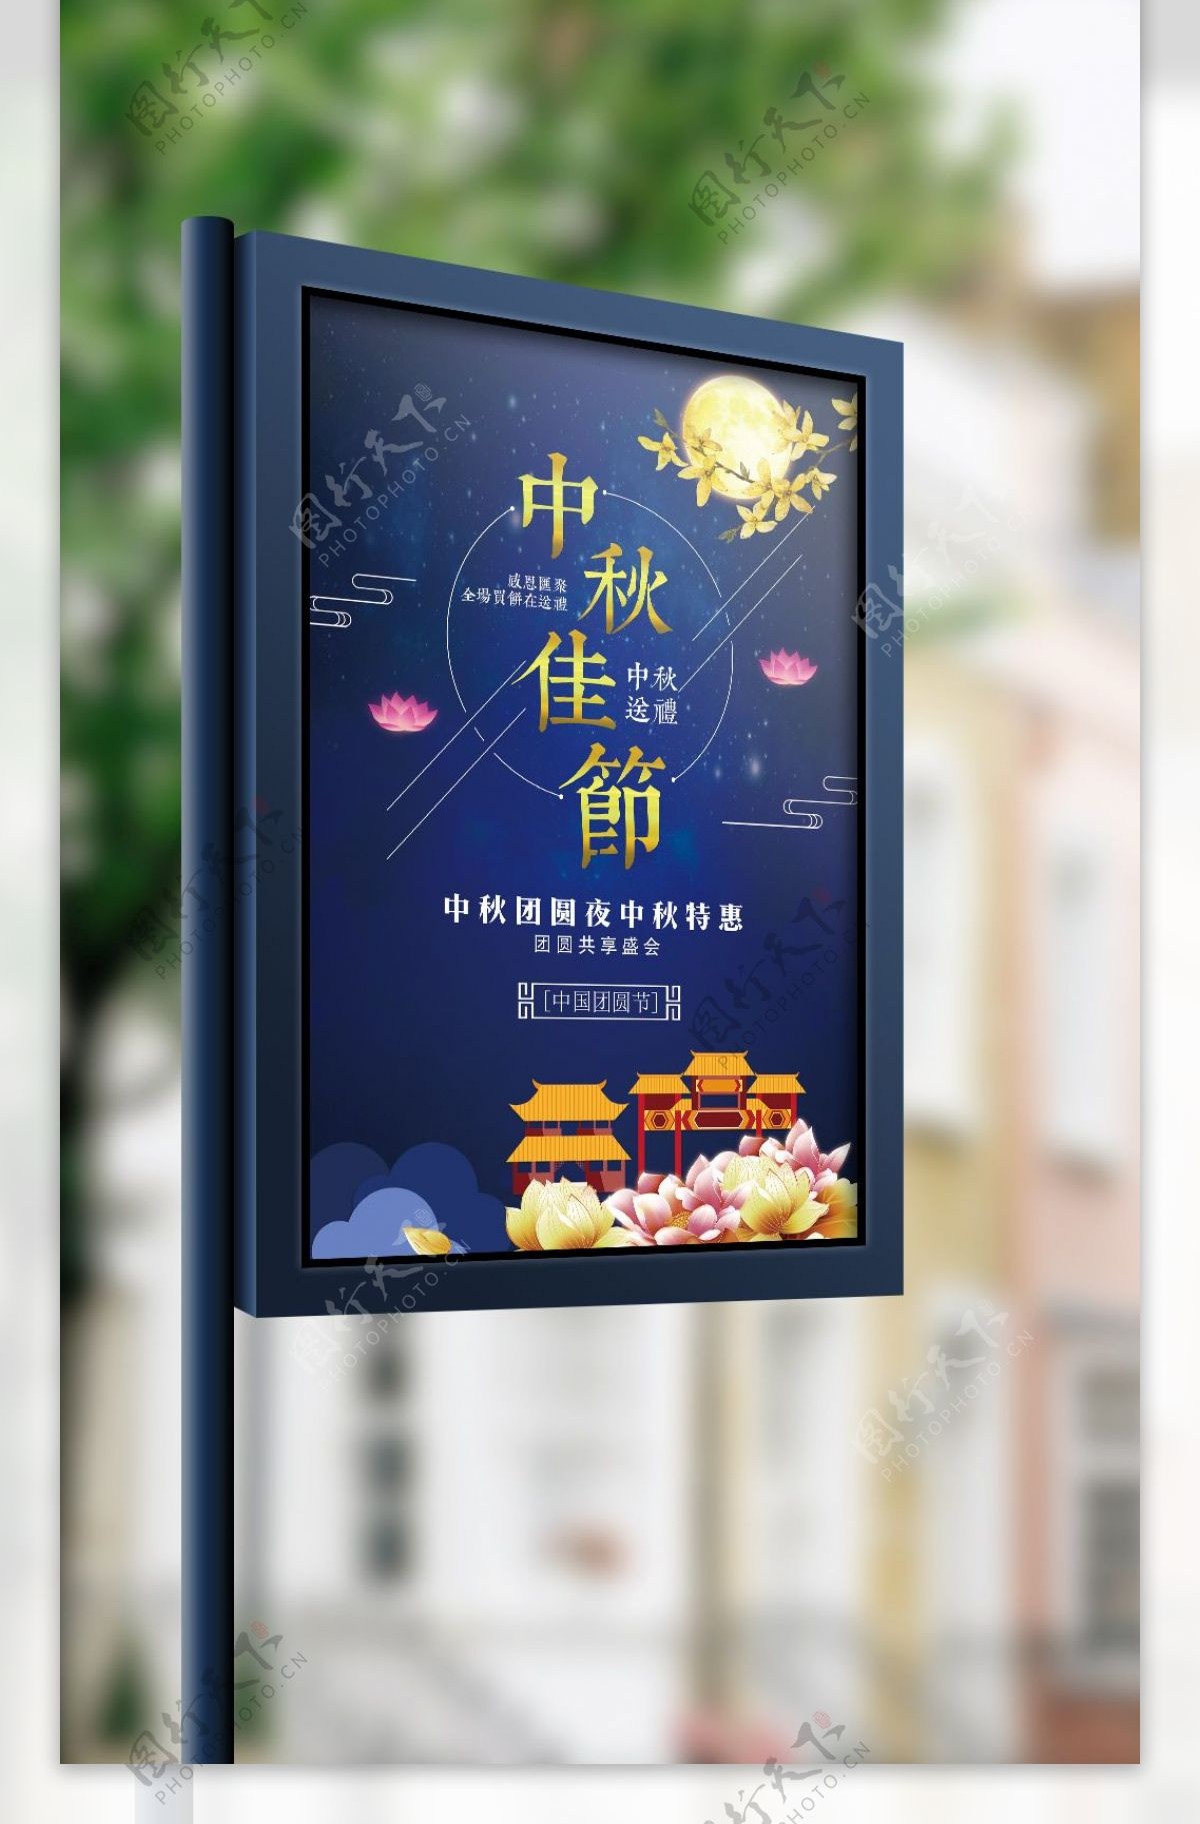 蓝色卡通中国风星空月亮中秋节节日商用海报